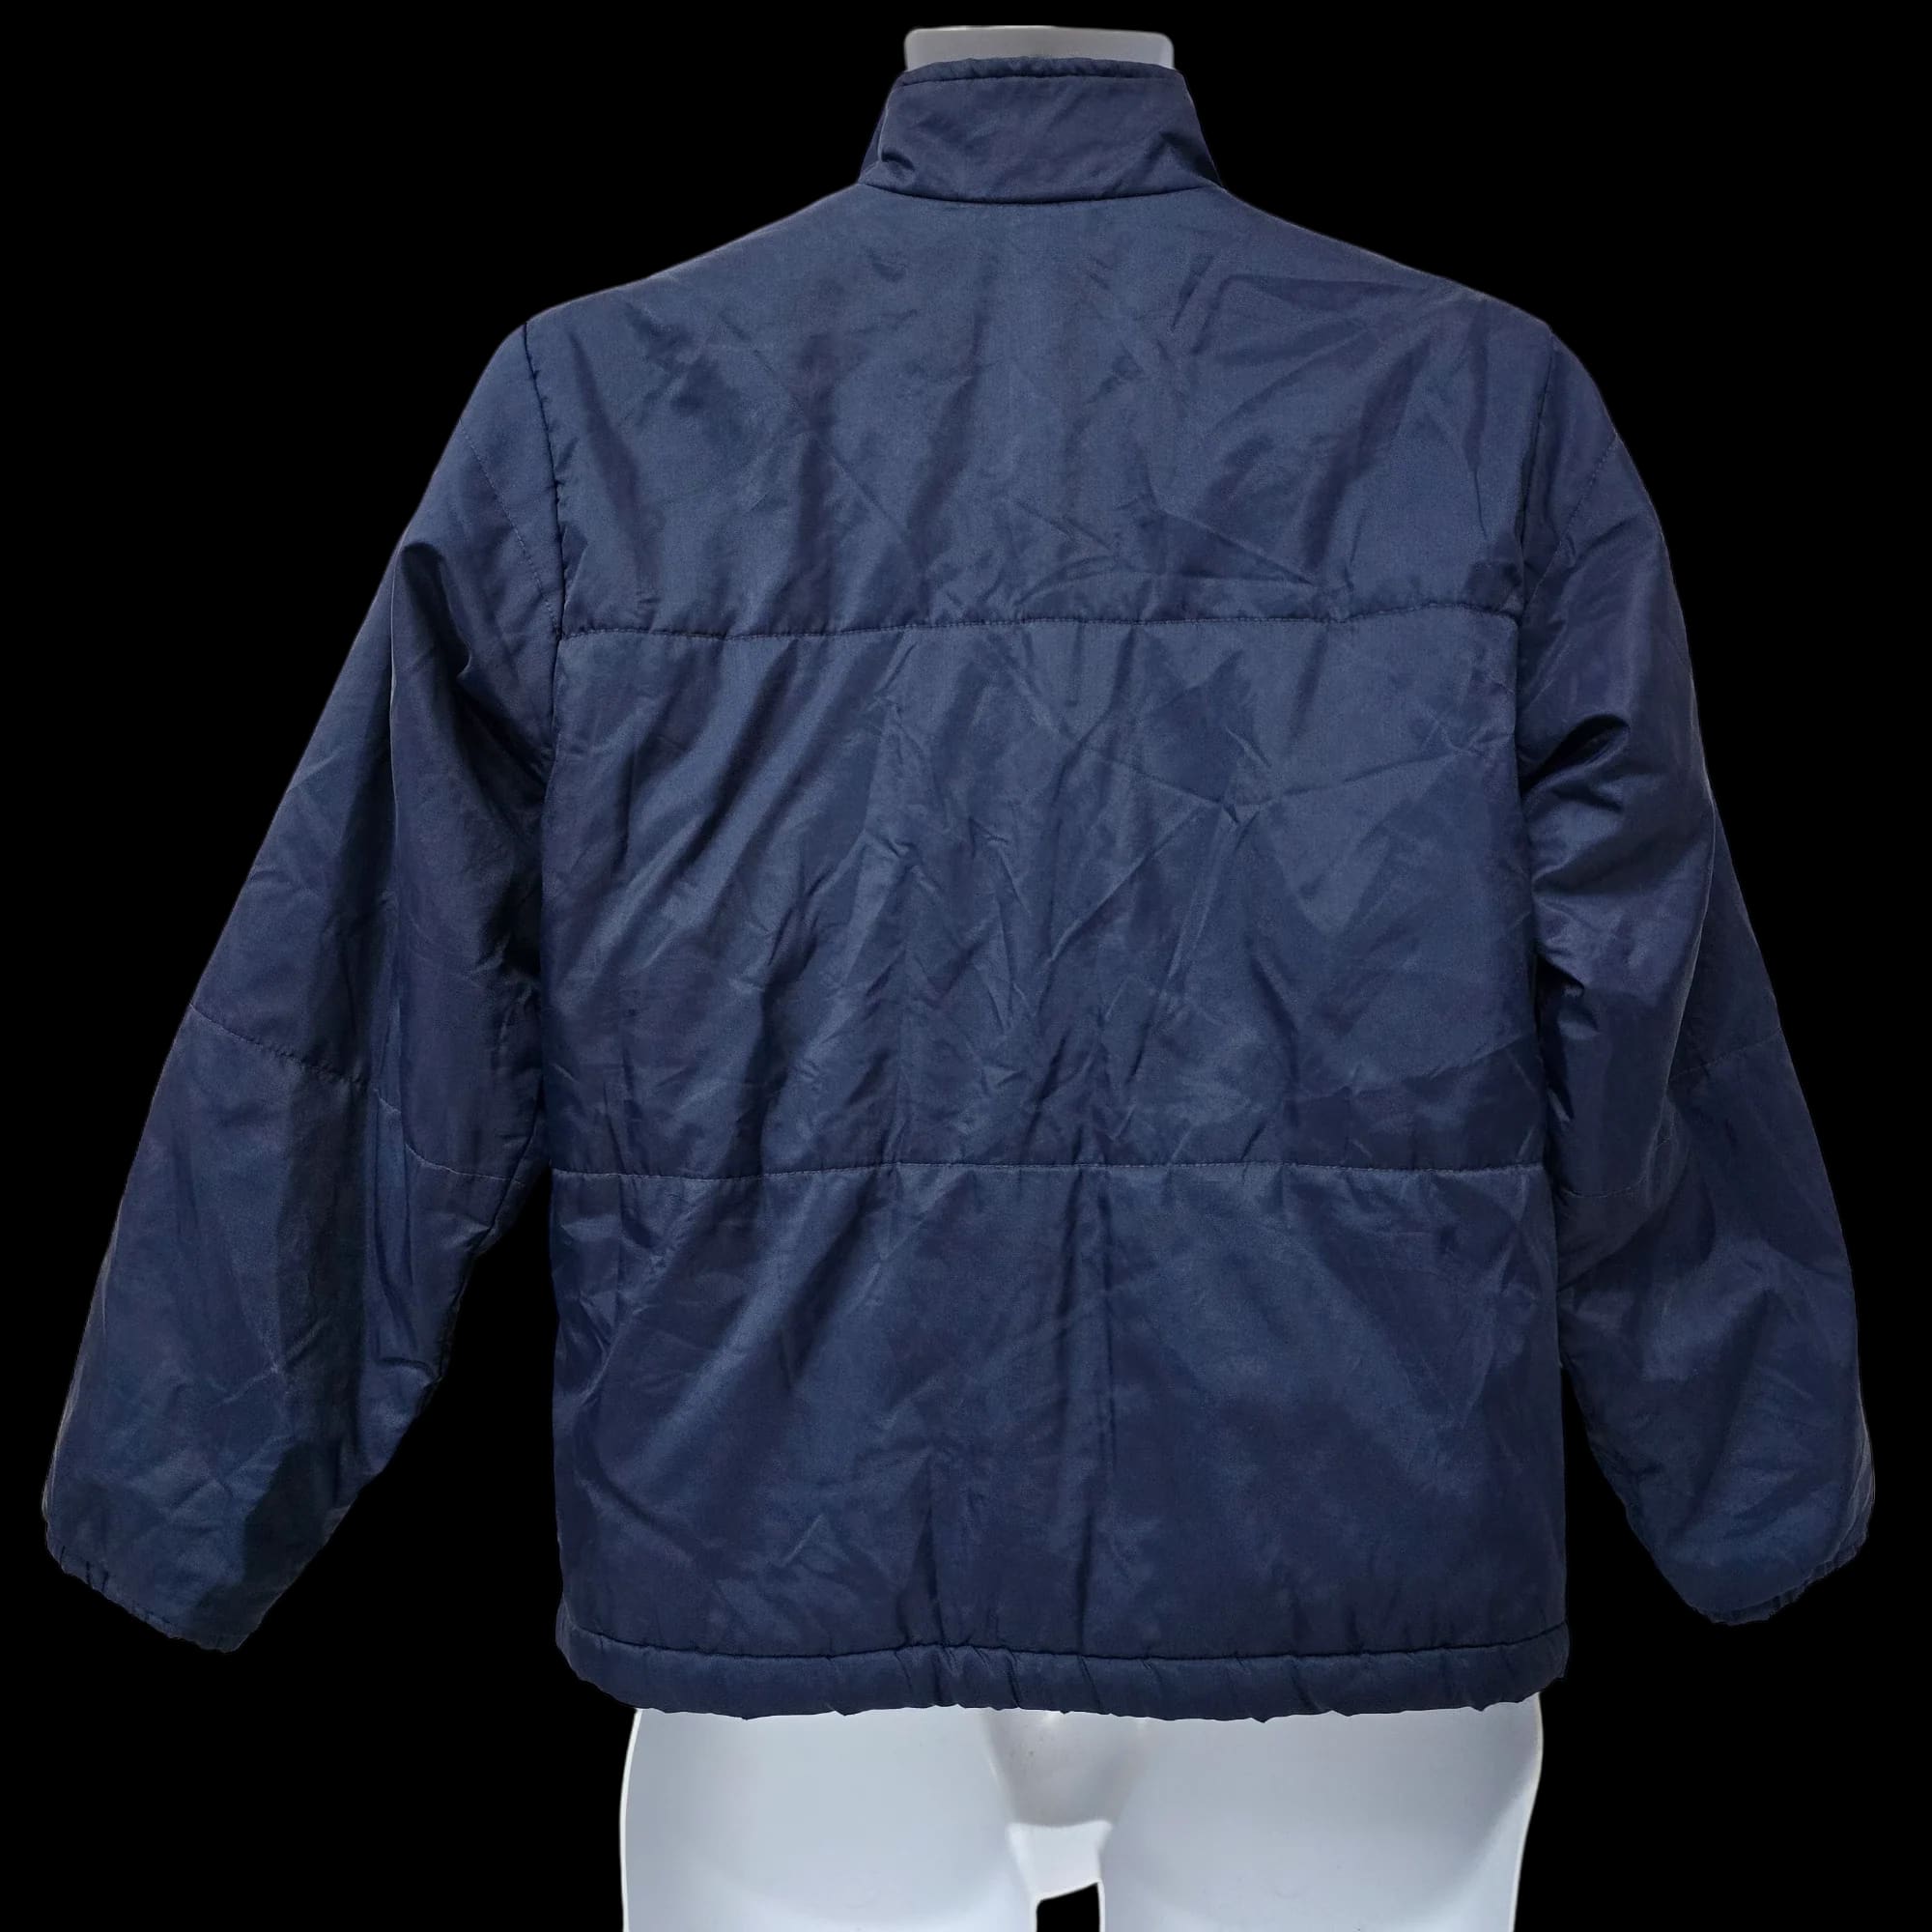 Unisex Nike Blue Bomber Jacket Coat UK Large - 2 - 3465